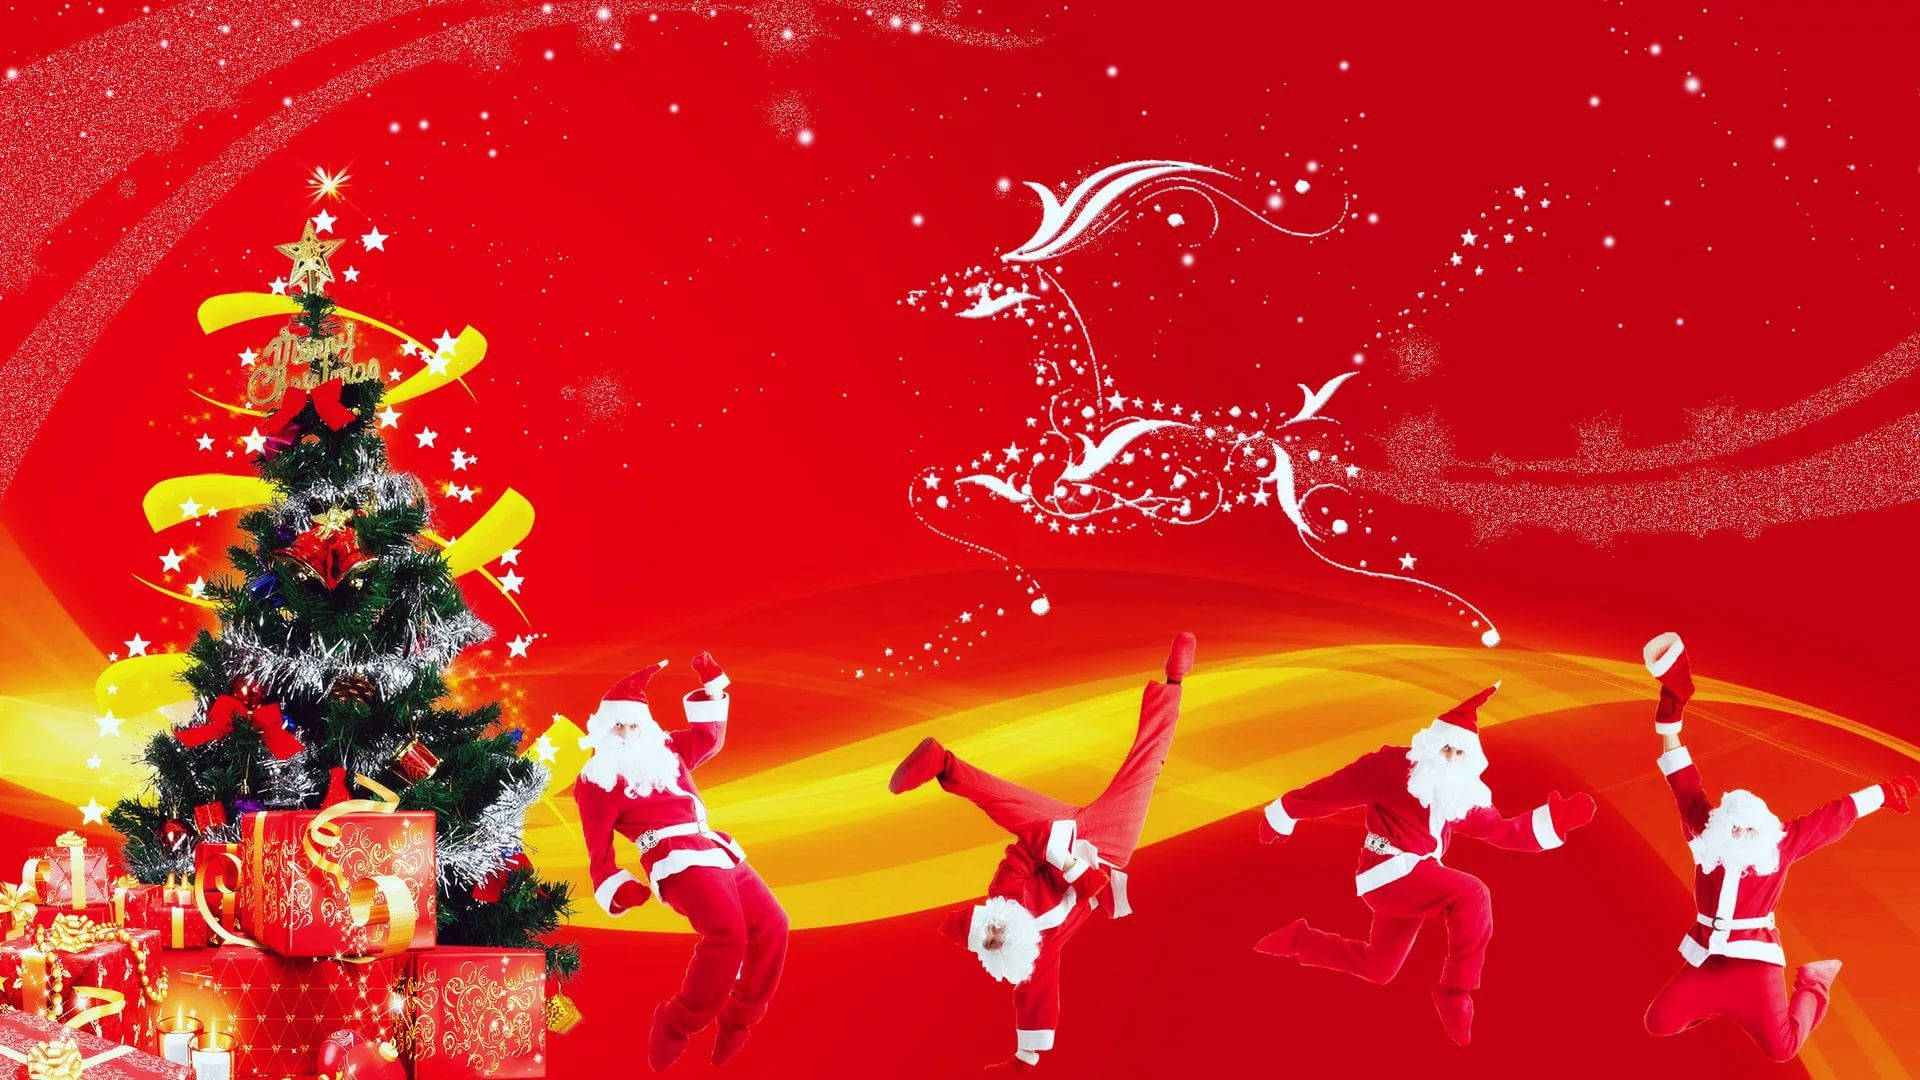 Dancing Santa Claus Funny Christmas Wallpaper